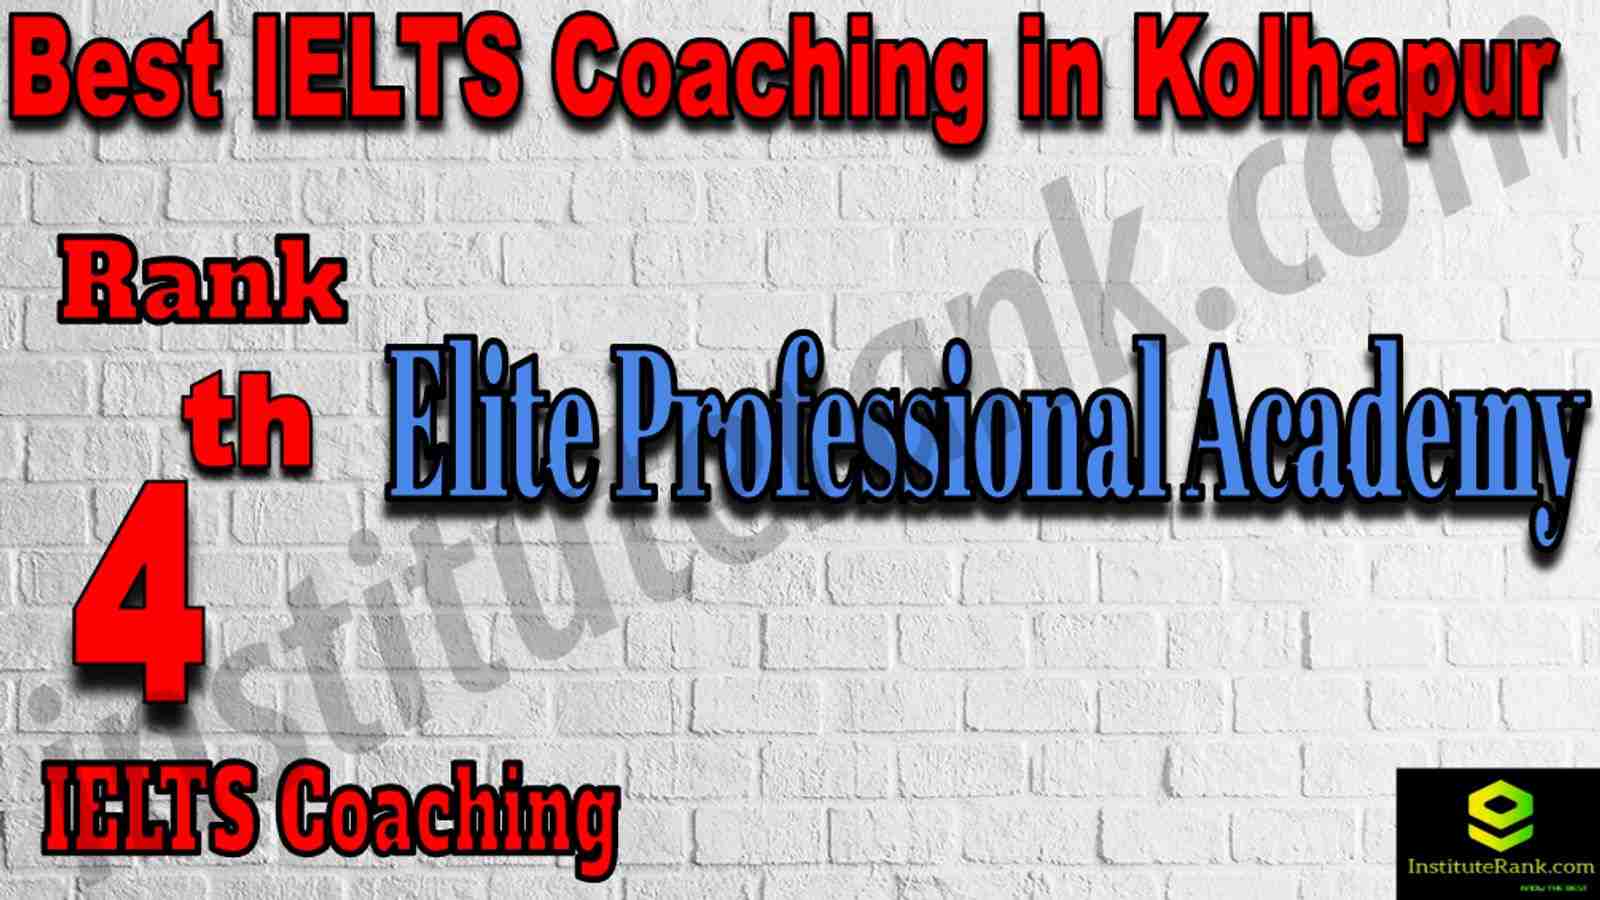 4th Best IELTS Coaching in Kolhapur